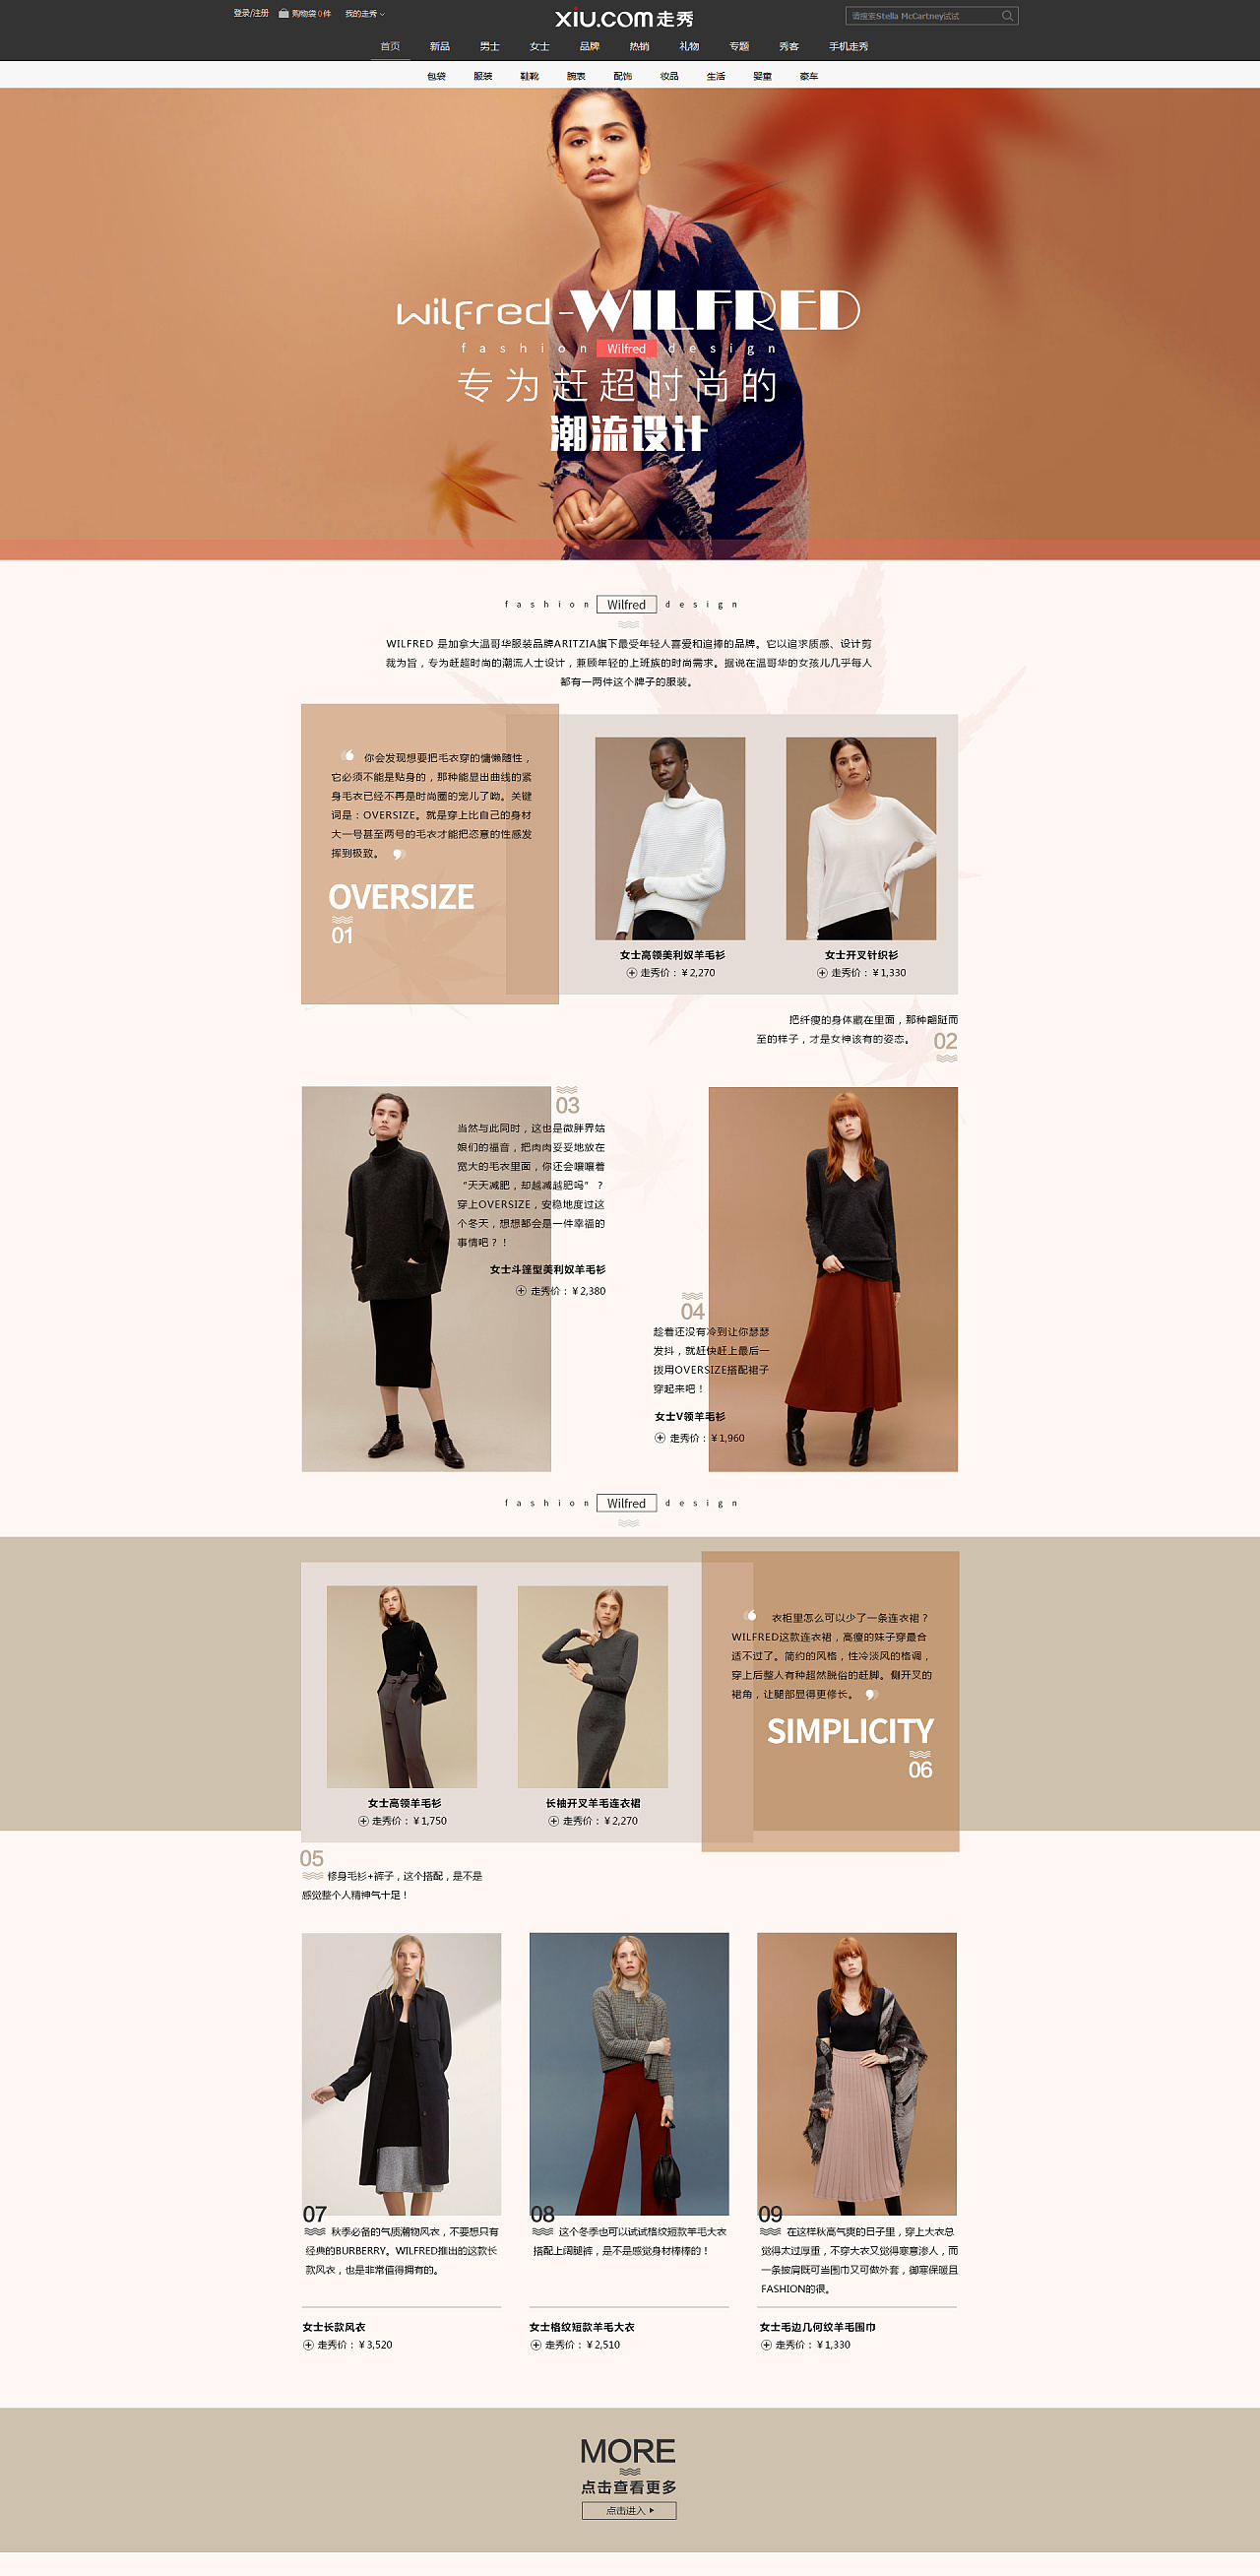 wilfred-女装 专为赶超时尚的潮流人士设计  走秀网 电商网页设计